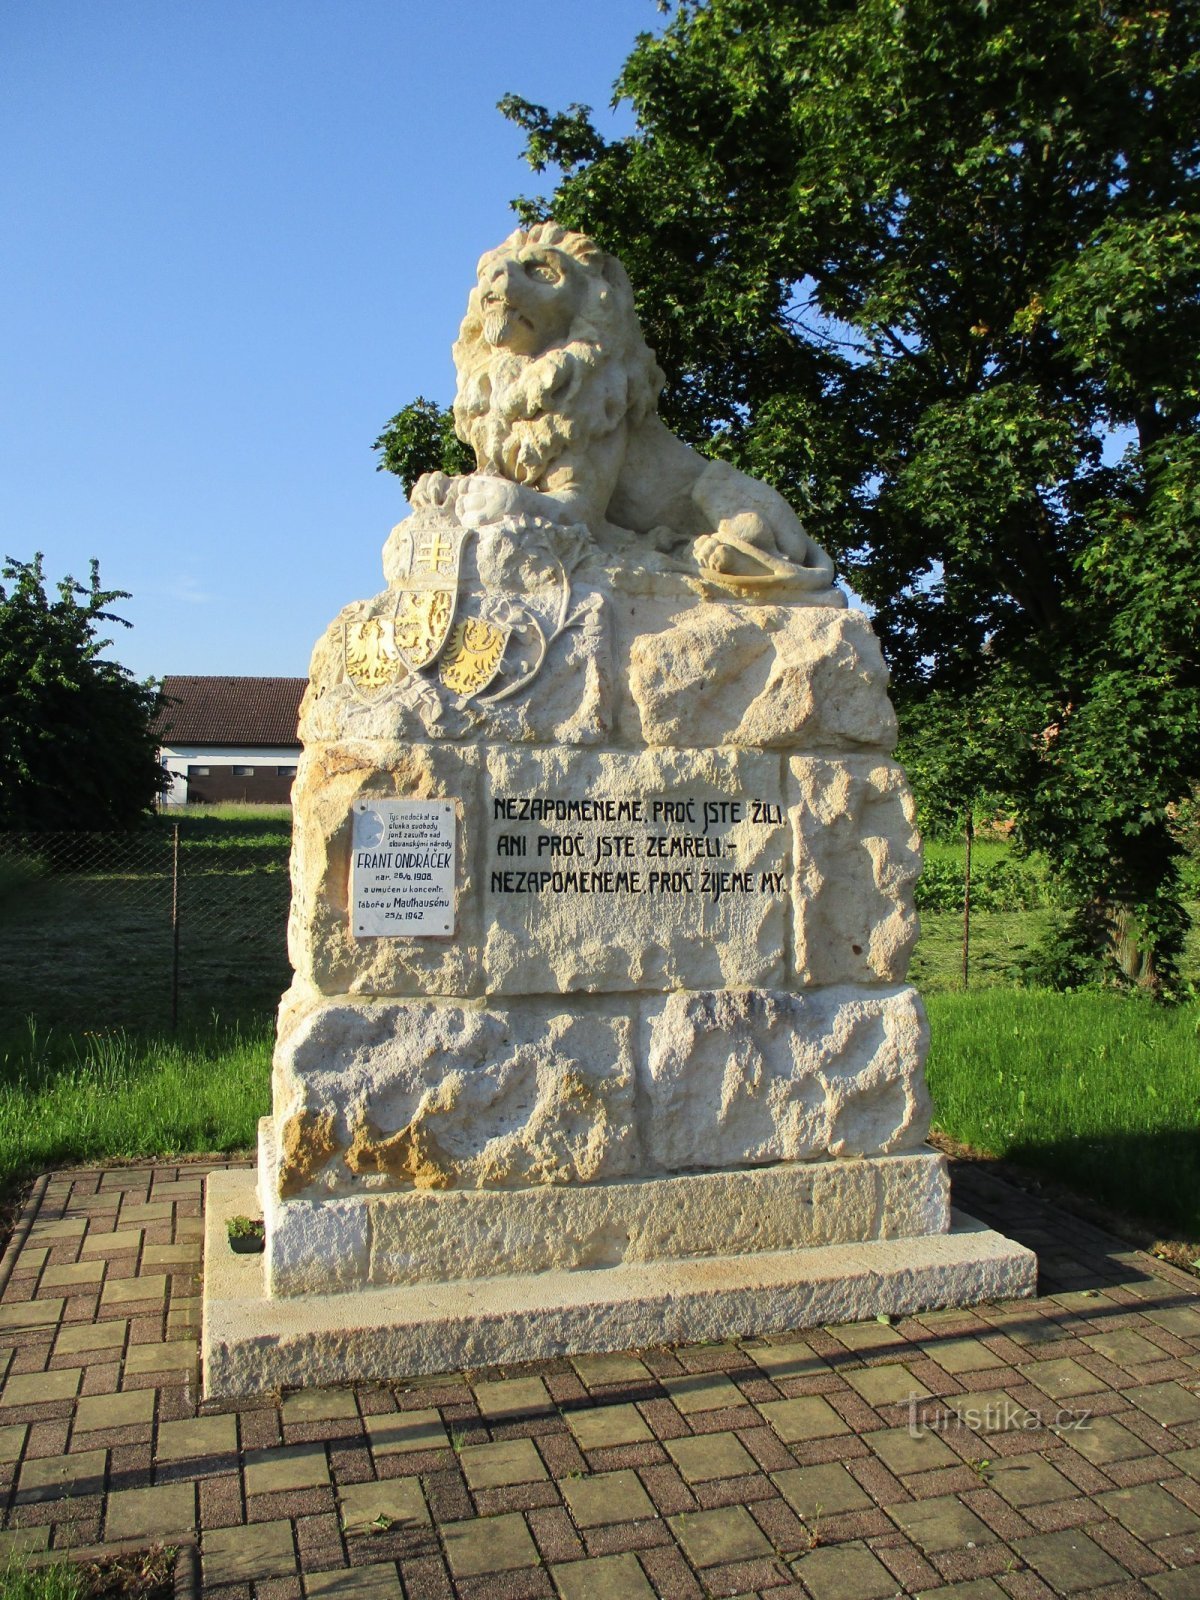 Het monument voor degenen die zijn omgekomen in de Eerste Wereldoorlog na de restauratie (Sedlice)